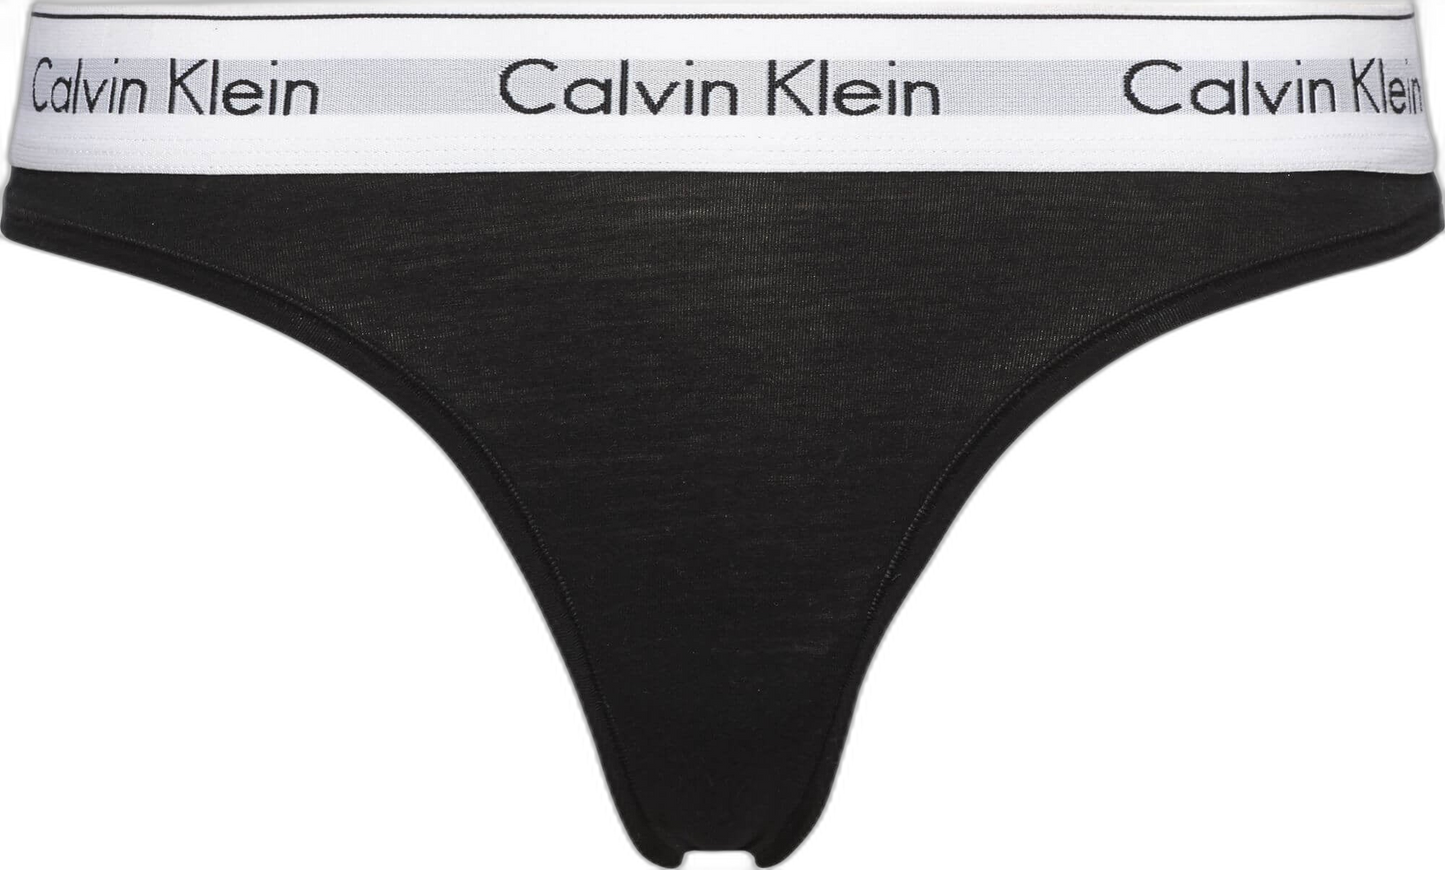 117337 | Calvin Klein - Calvin Klein Sort.